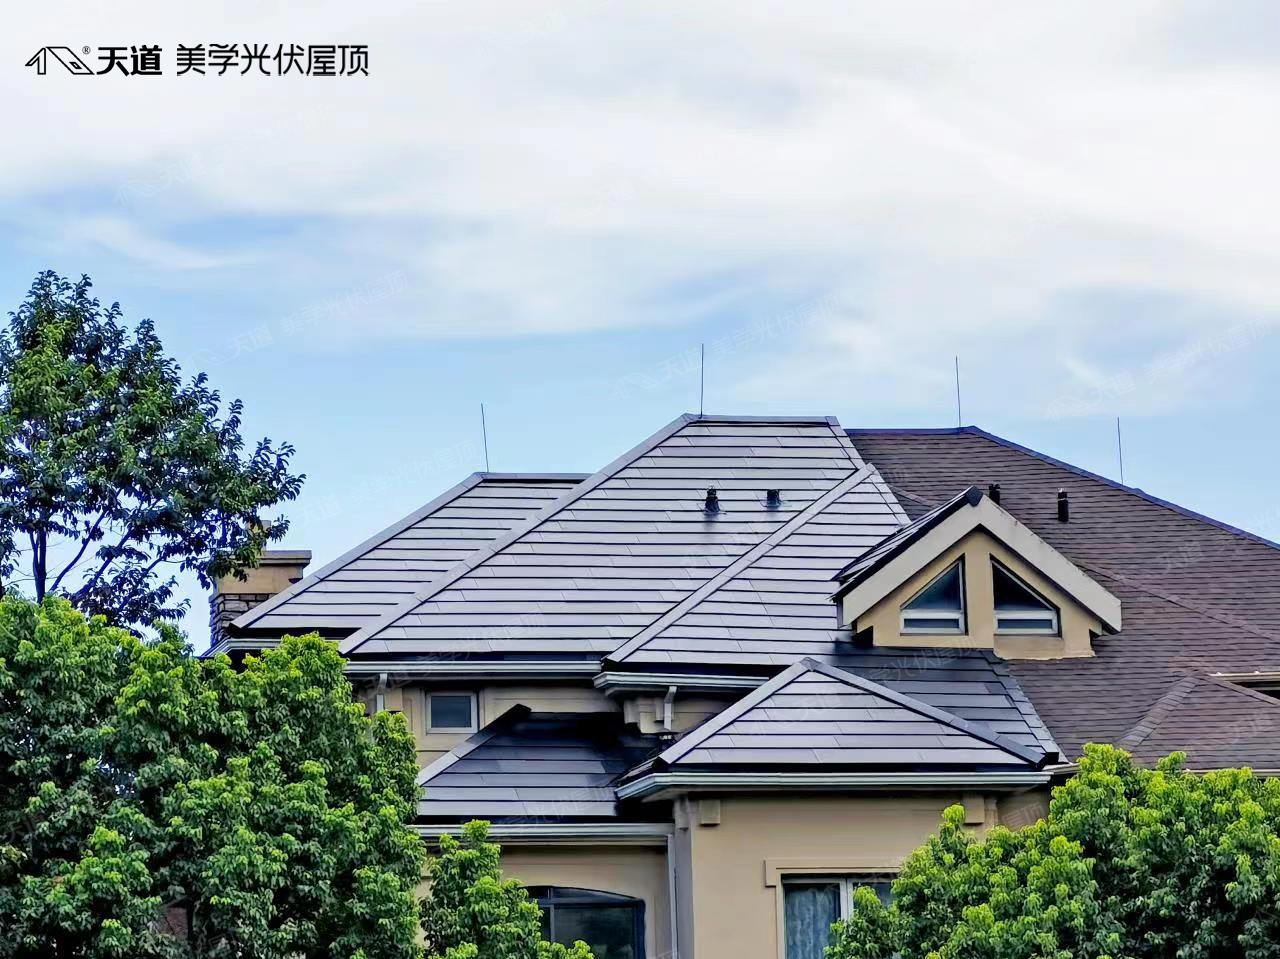 使用屋顶式光伏需要注意的事情有哪些？